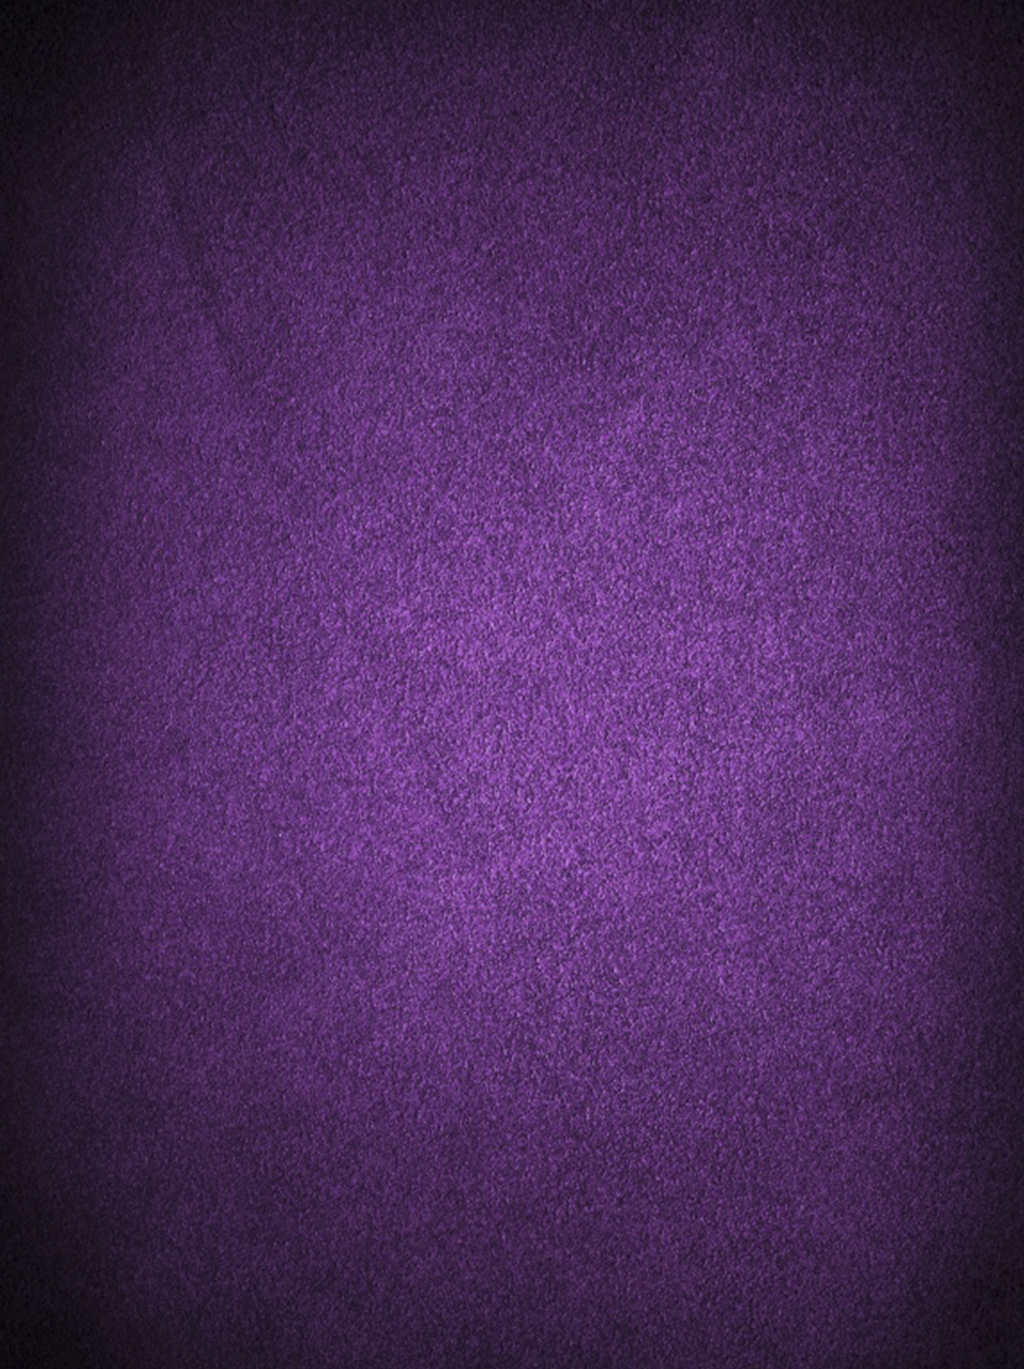 Dark Purple Matte Background Illustration